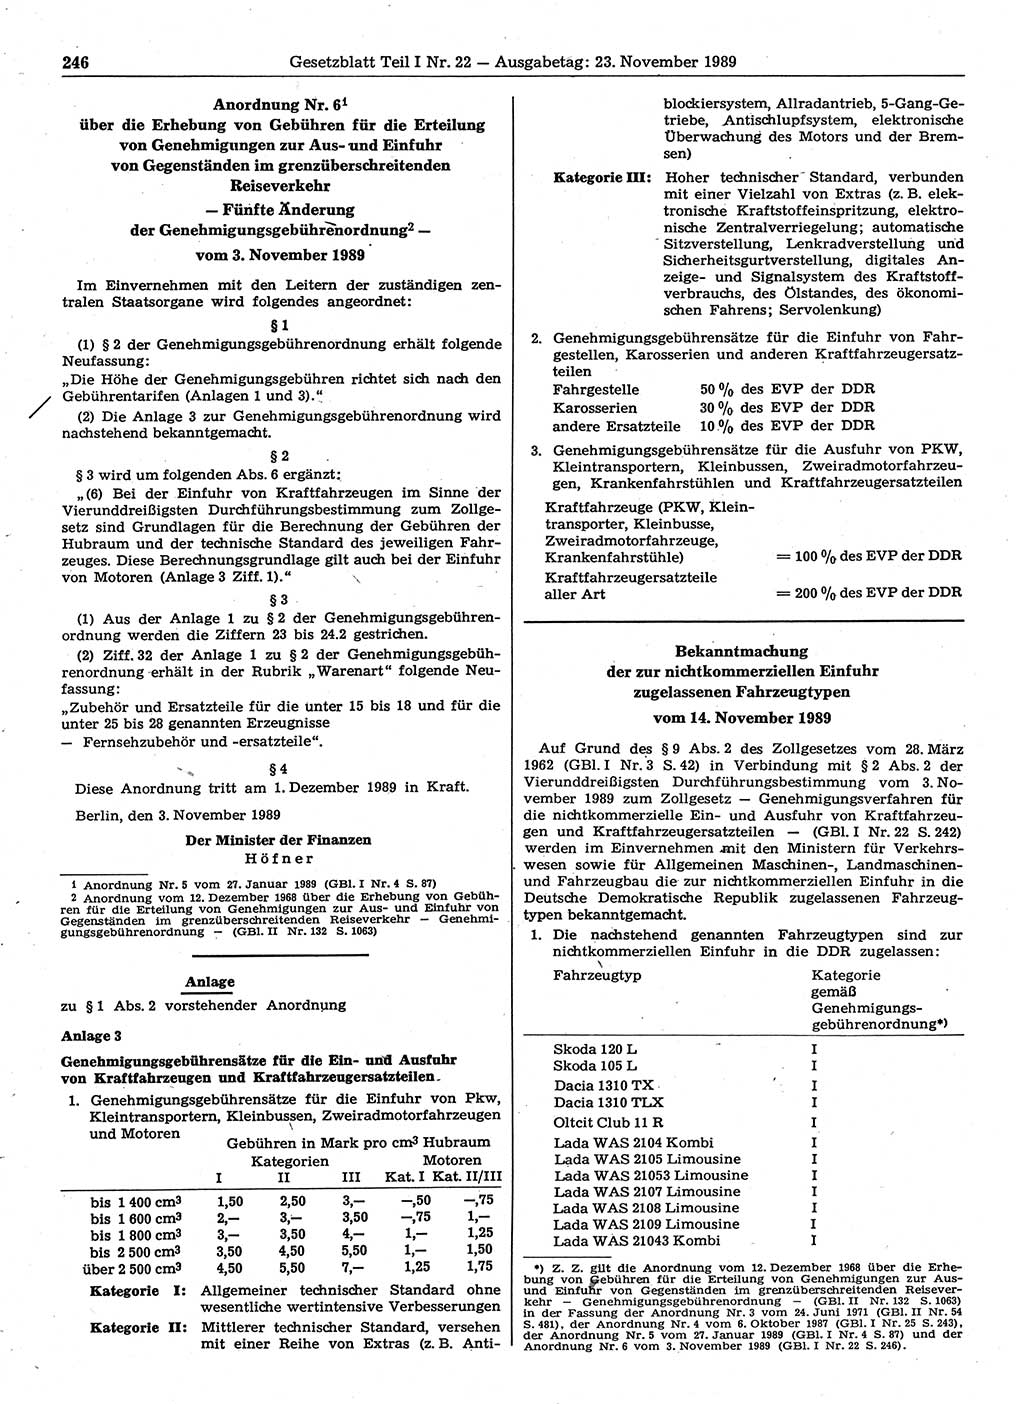 Gesetzblatt (GBl.) der Deutschen Demokratischen Republik (DDR) Teil Ⅰ 1989, Seite 246 (GBl. DDR Ⅰ 1989, S. 246)